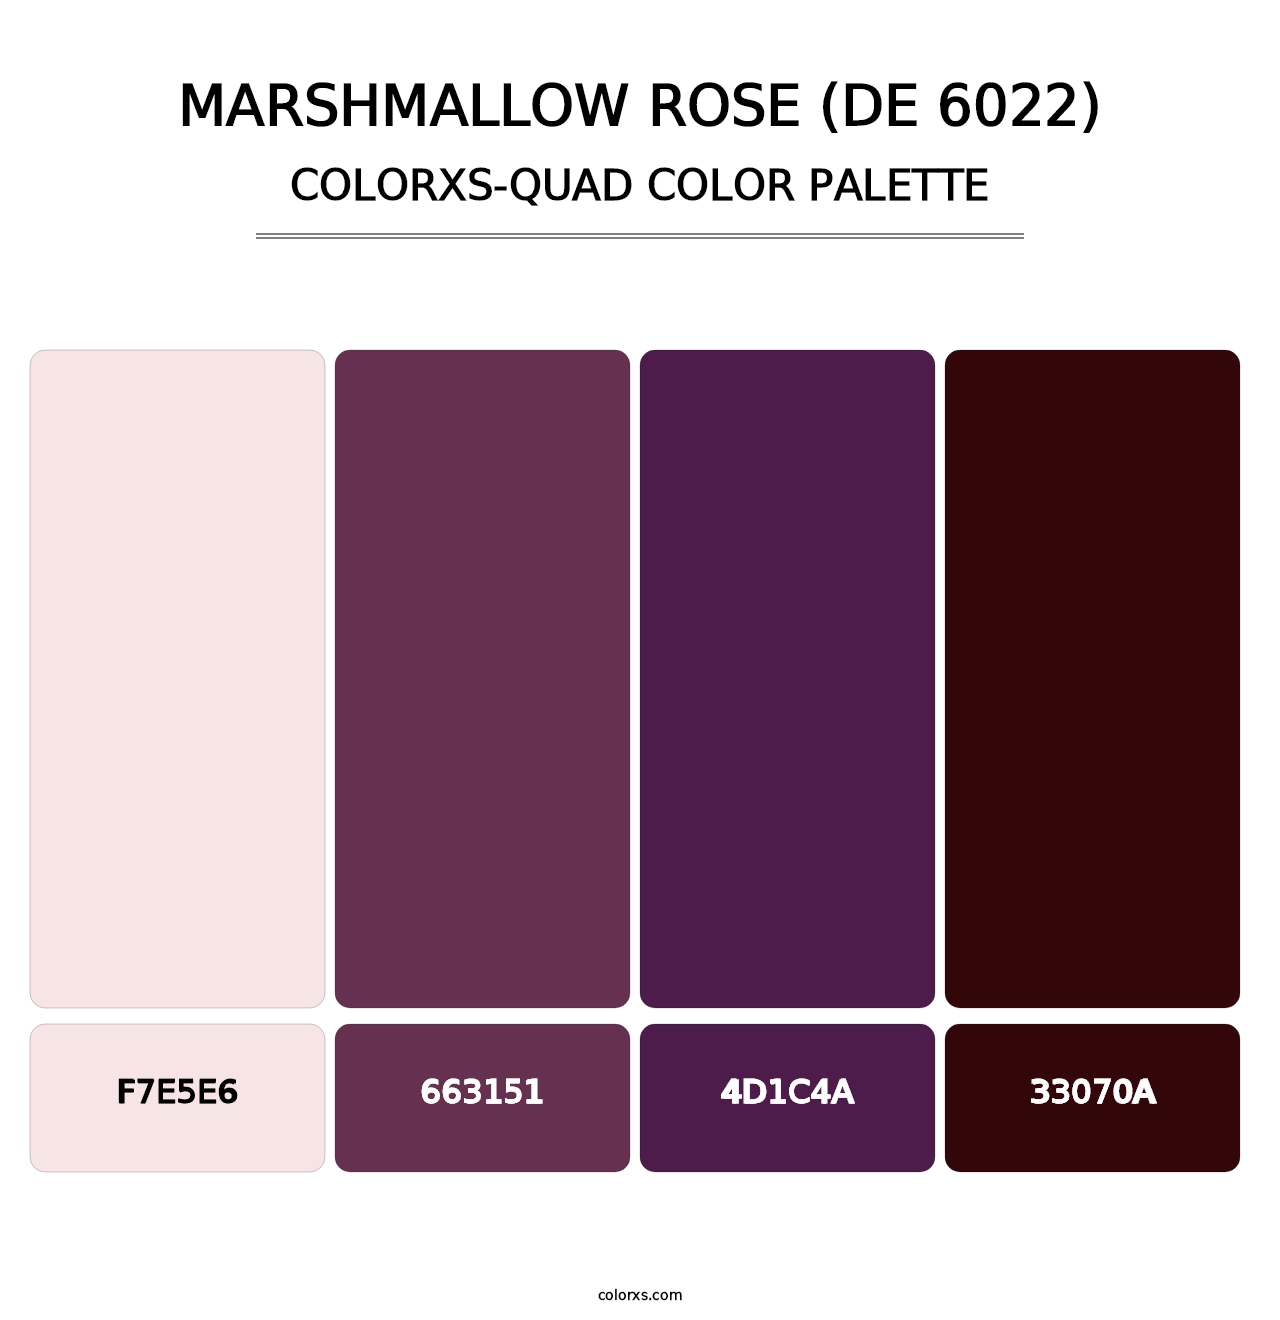 Marshmallow Rose (DE 6022) - Colorxs Quad Palette